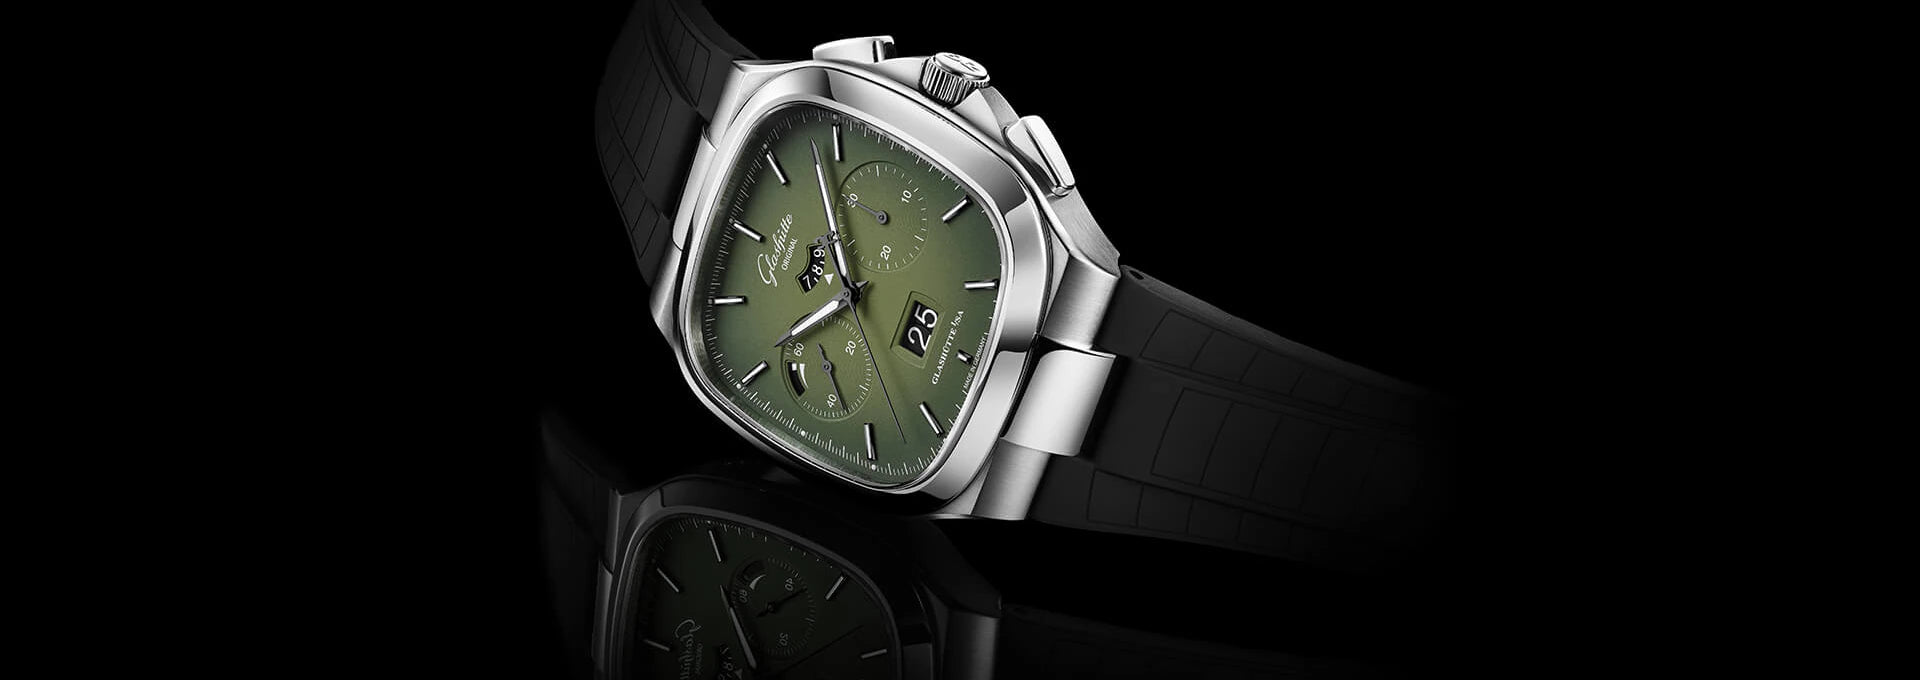 格拉苏蒂原创七十年代计时码表绿色表盘男士手表 40 1-37-02-09-02-62